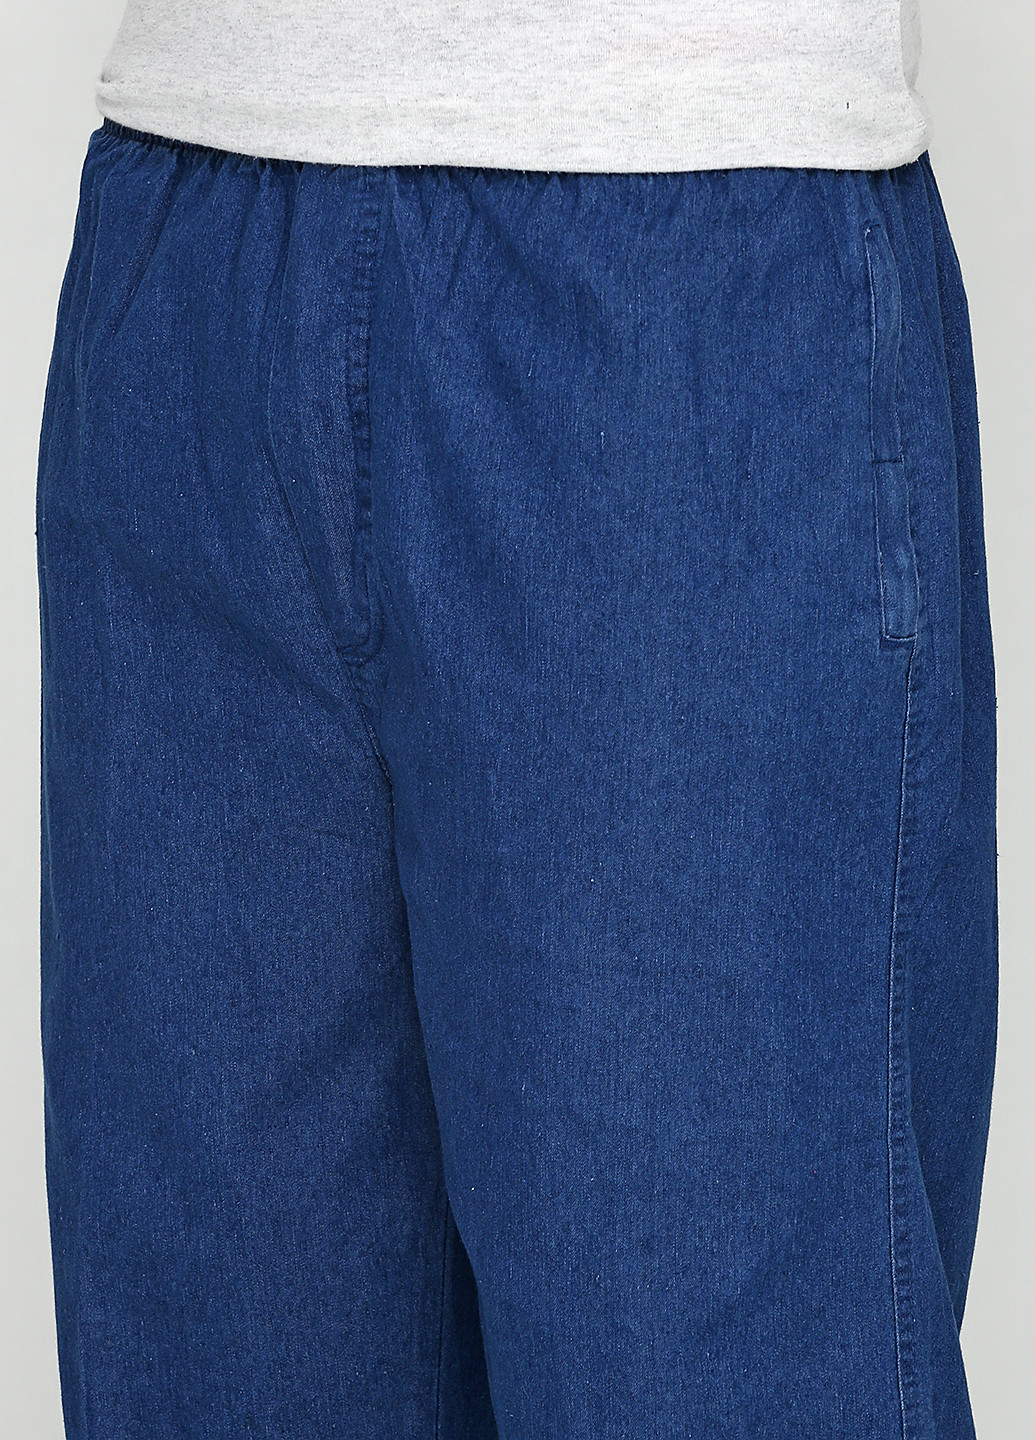 Синие демисезонные со средней талией джинсы Long